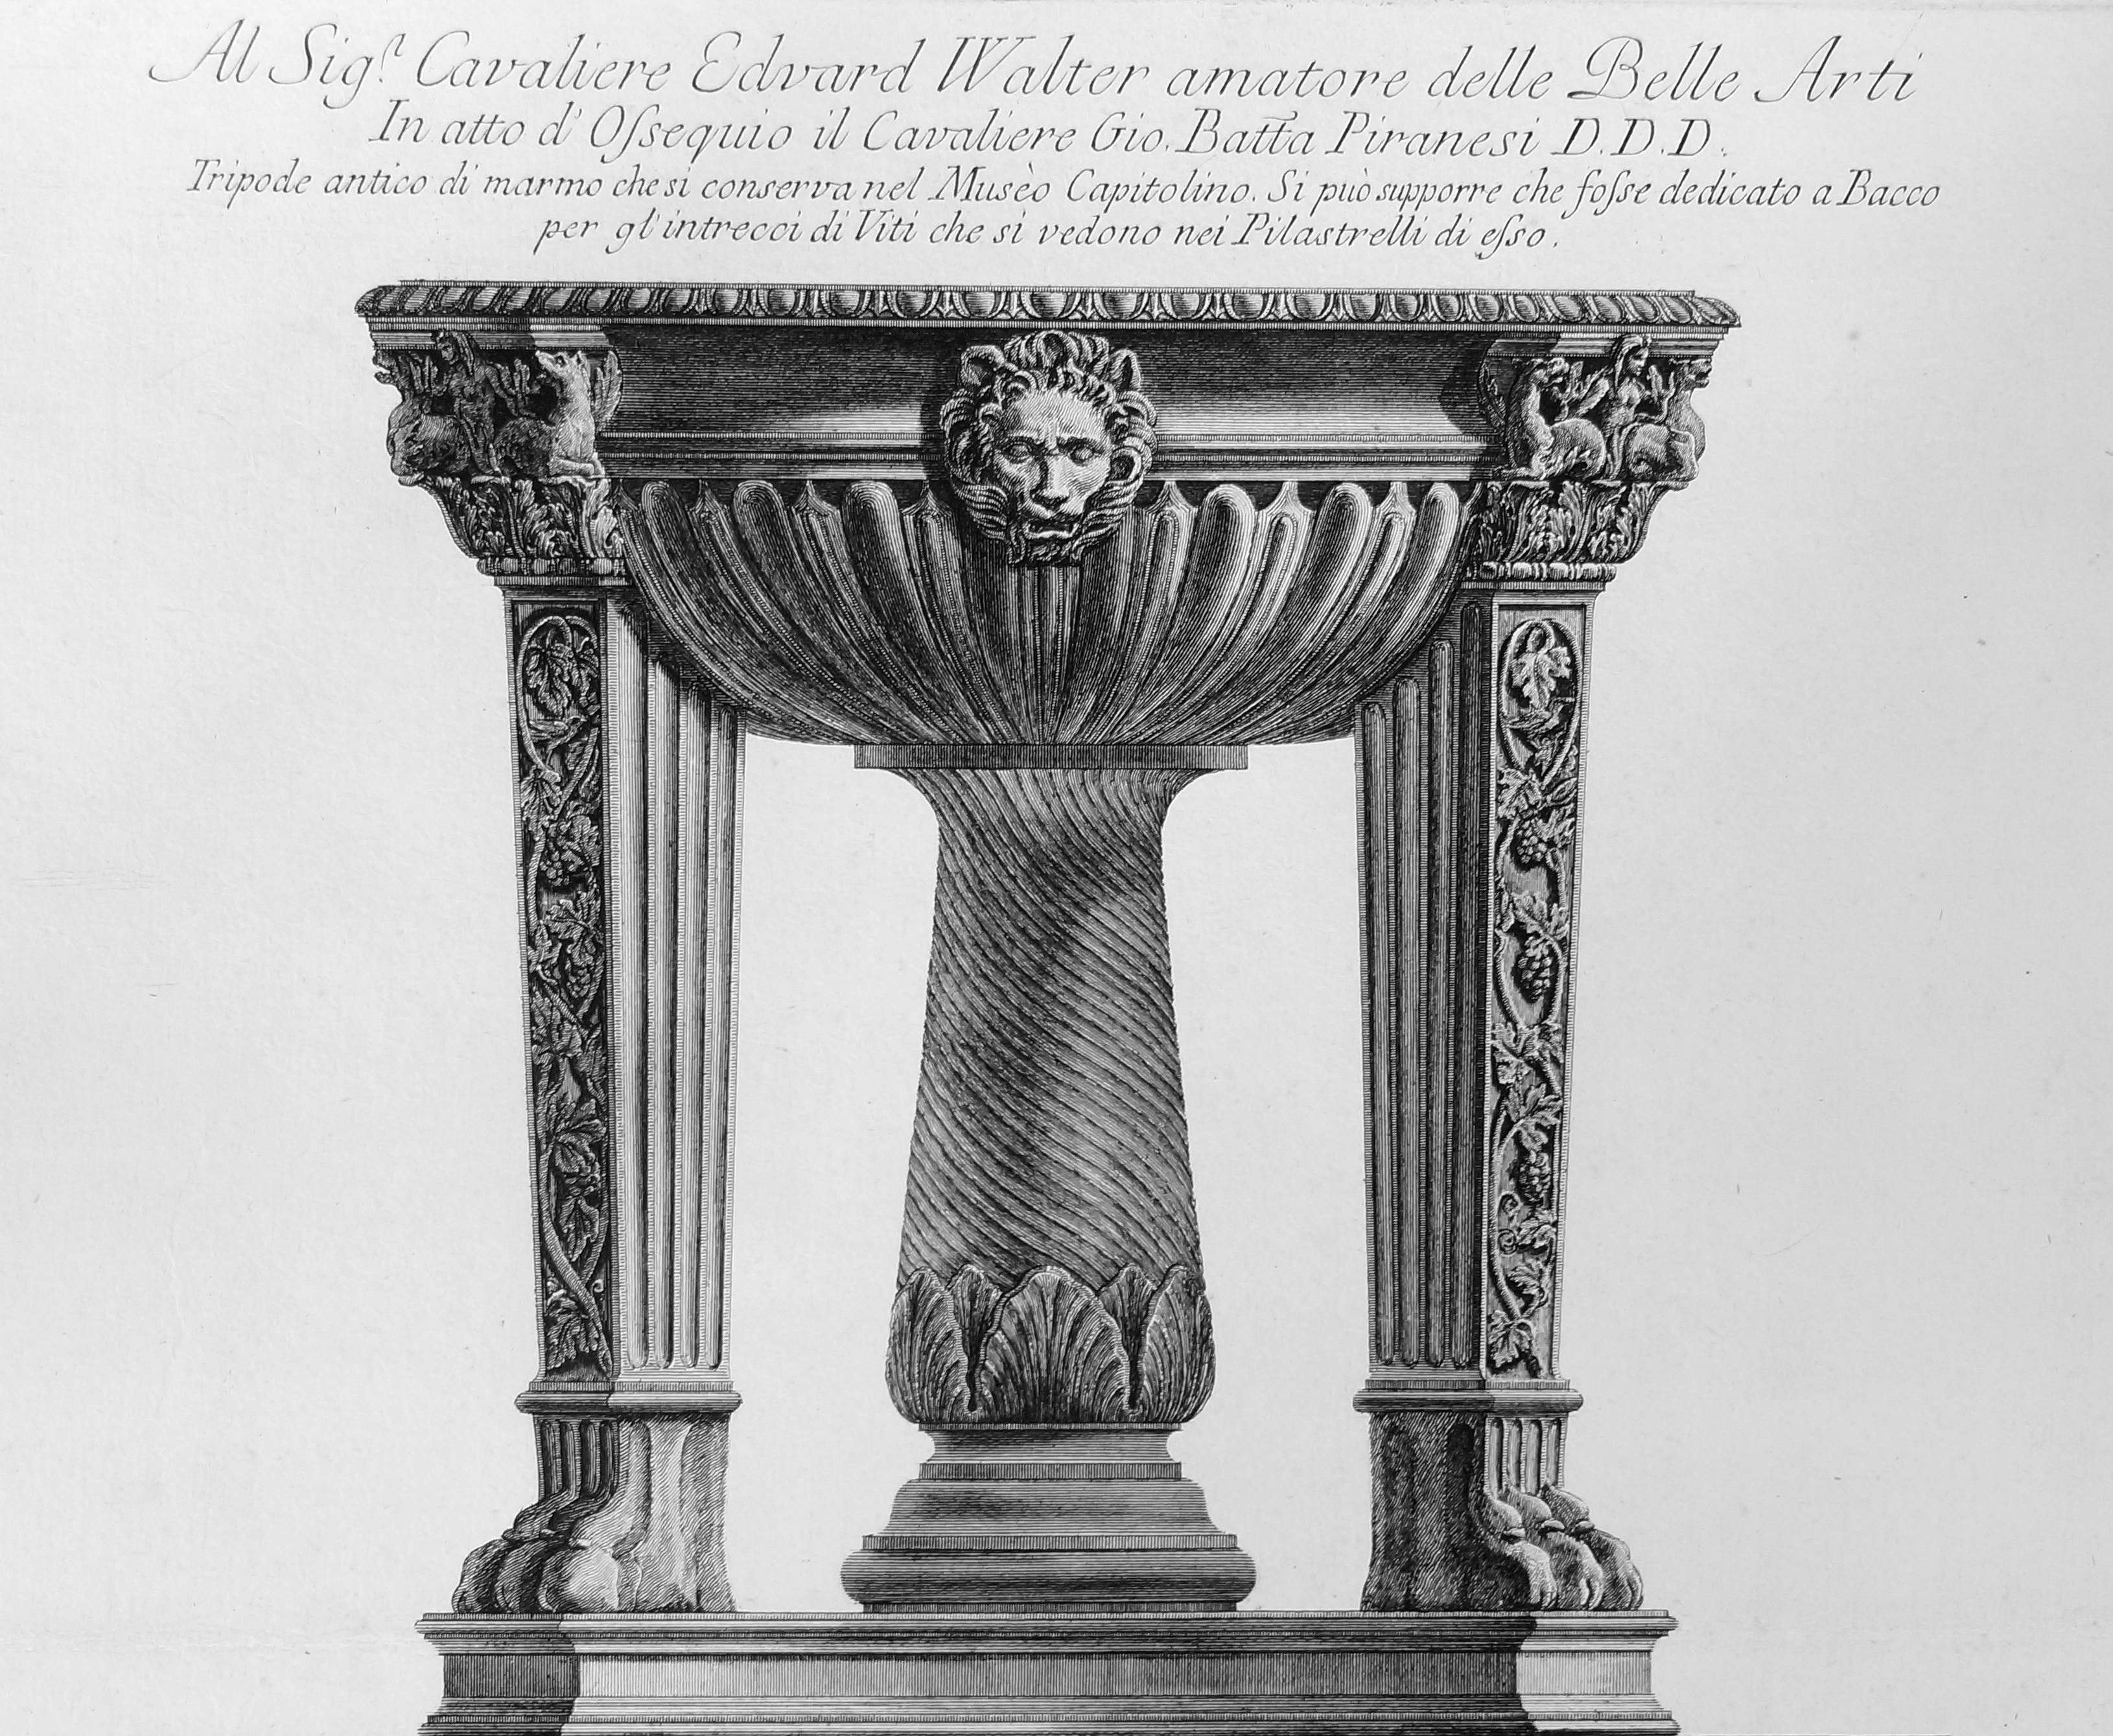  Tripode antico di marmo che si conserva nel Museo Capitolino - Etching 1778 - Print by Giovanni Battista Piranesi